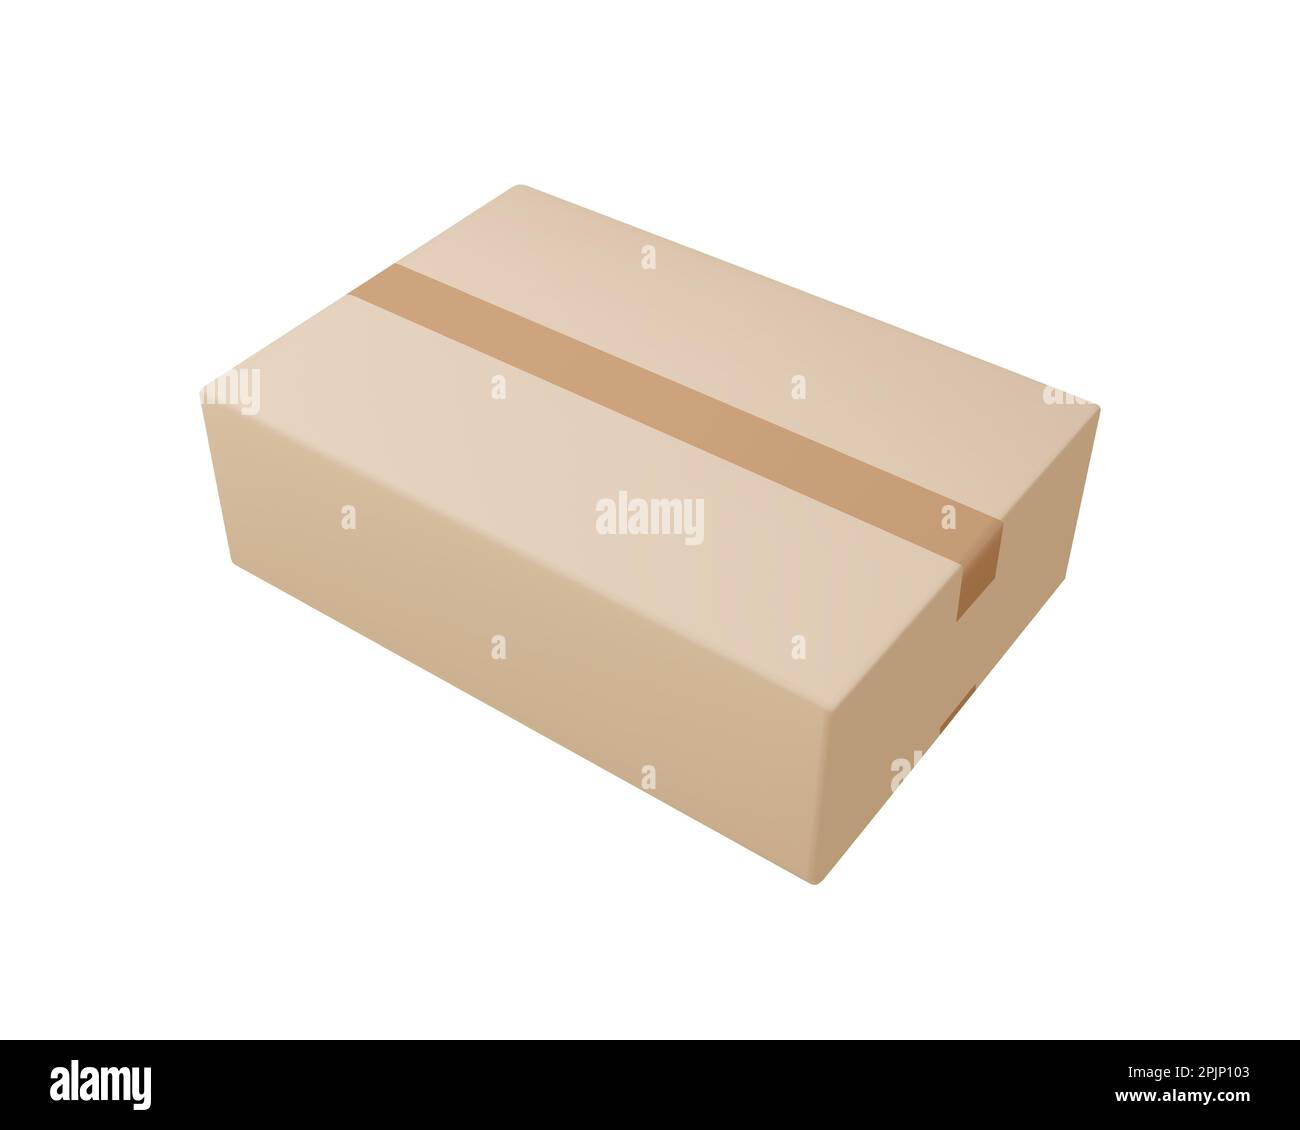 Lieferbox auf isoliertem Hintergrund. Karton oder Karton realistische Lieferkartons mit Scotch Tape. 3D realistische Verpackungskartons. Vektorgrafik Stock Vektor